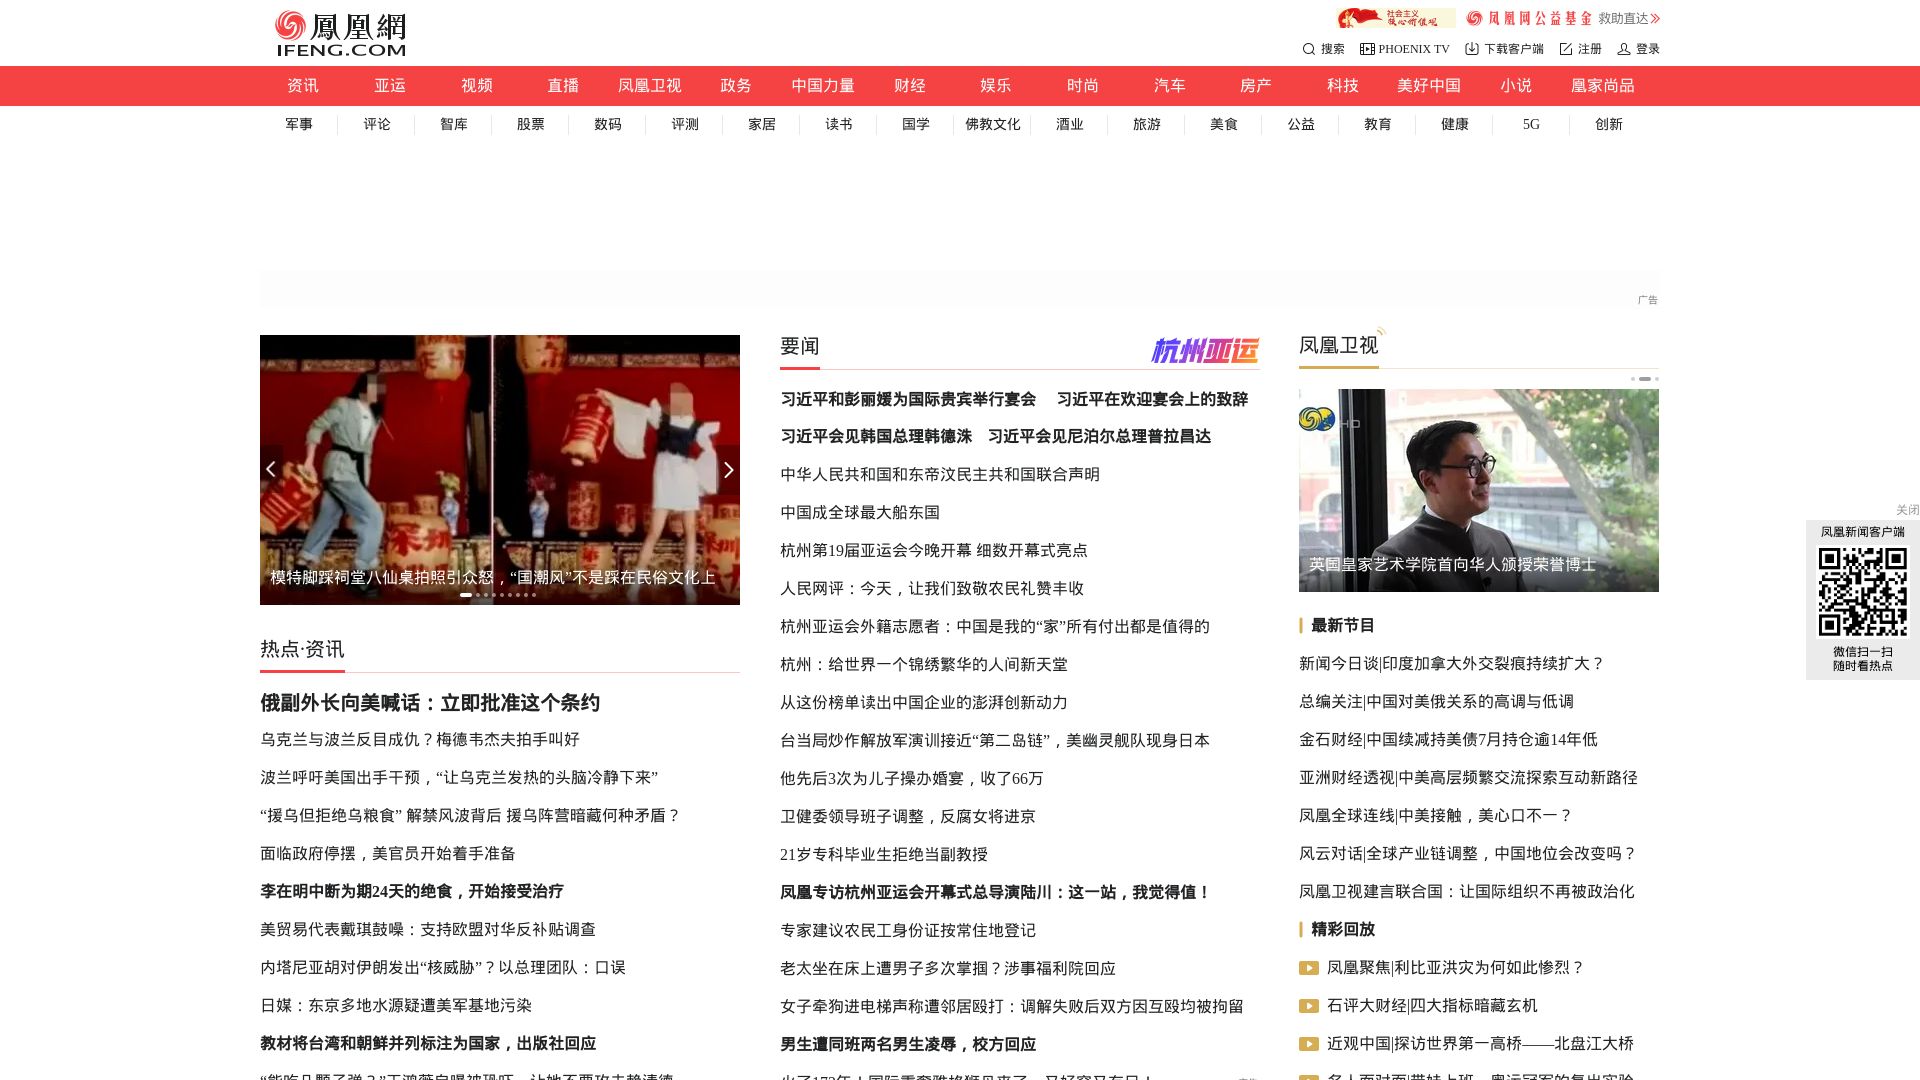 Status do site ifeng.com está   ONLINE